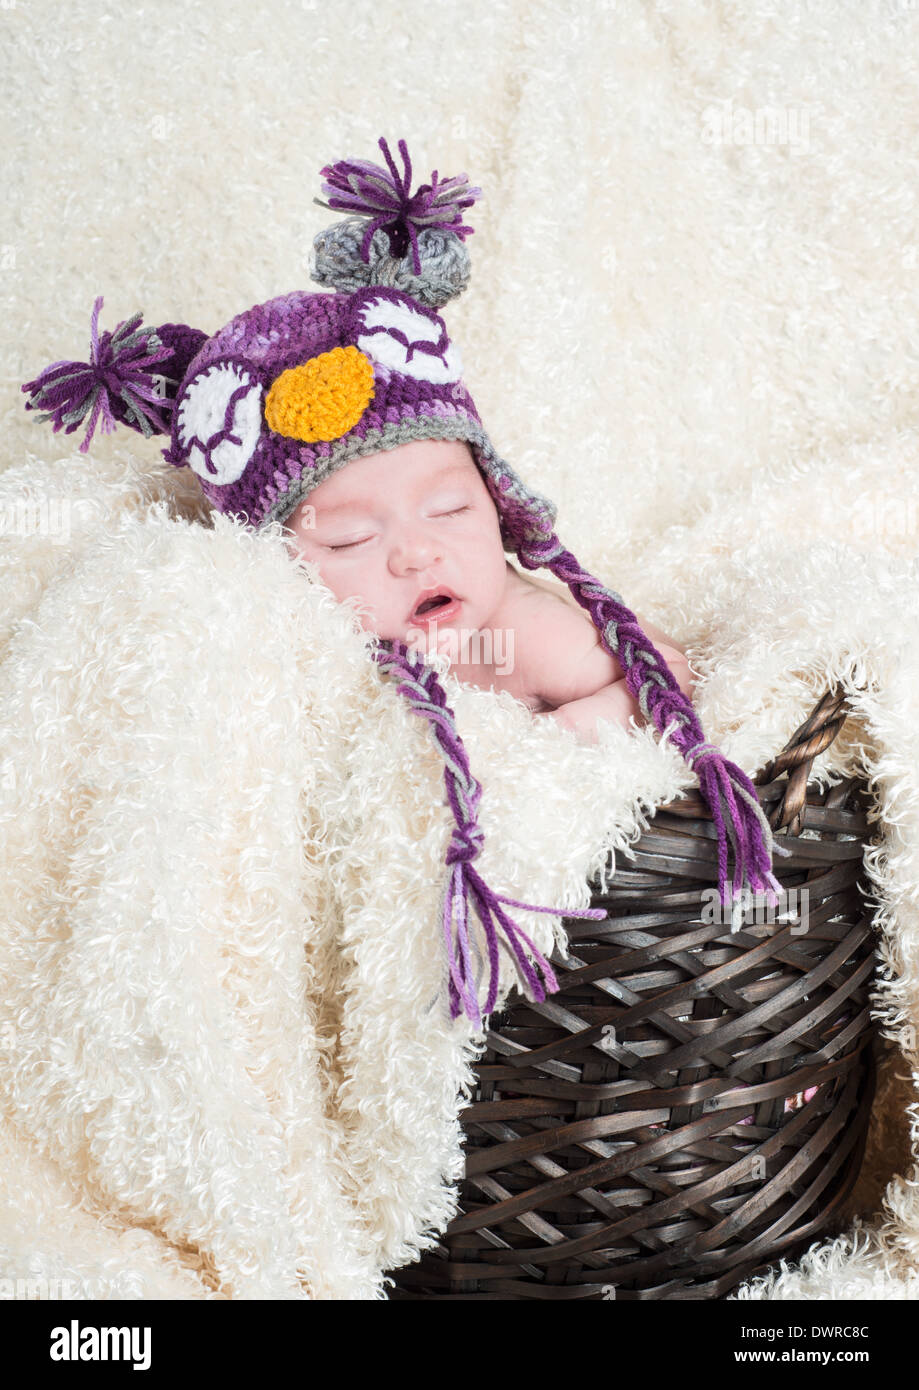 Bébé à dormir dans un panier avec une douce couverture portant un chapeau owl en bonneterie Banque D'Images